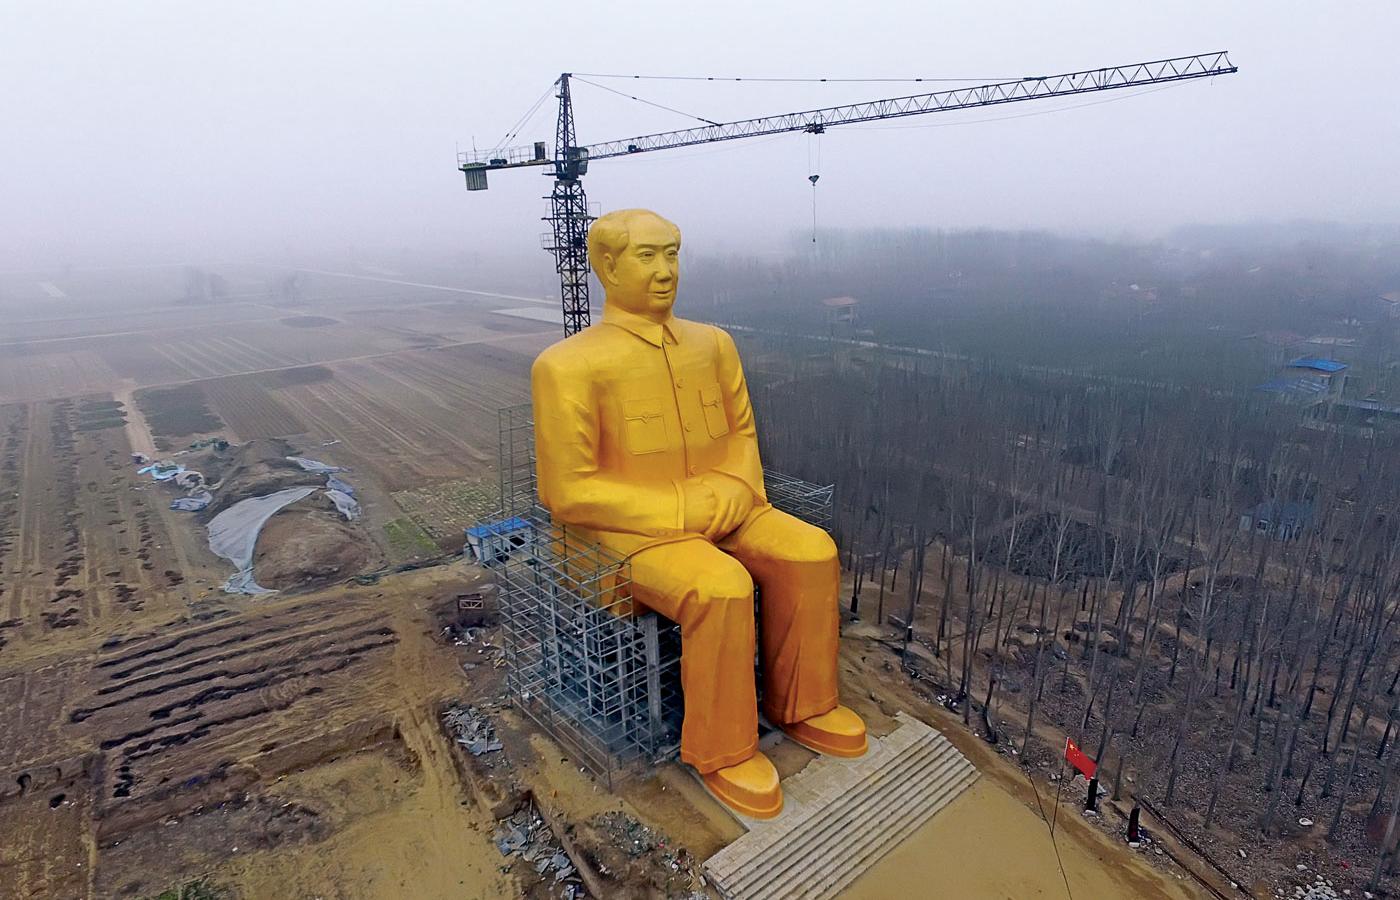 W chińskiej prowincji Henan właśnie powstaje gigantyczny pomnik Mao Zedonga.